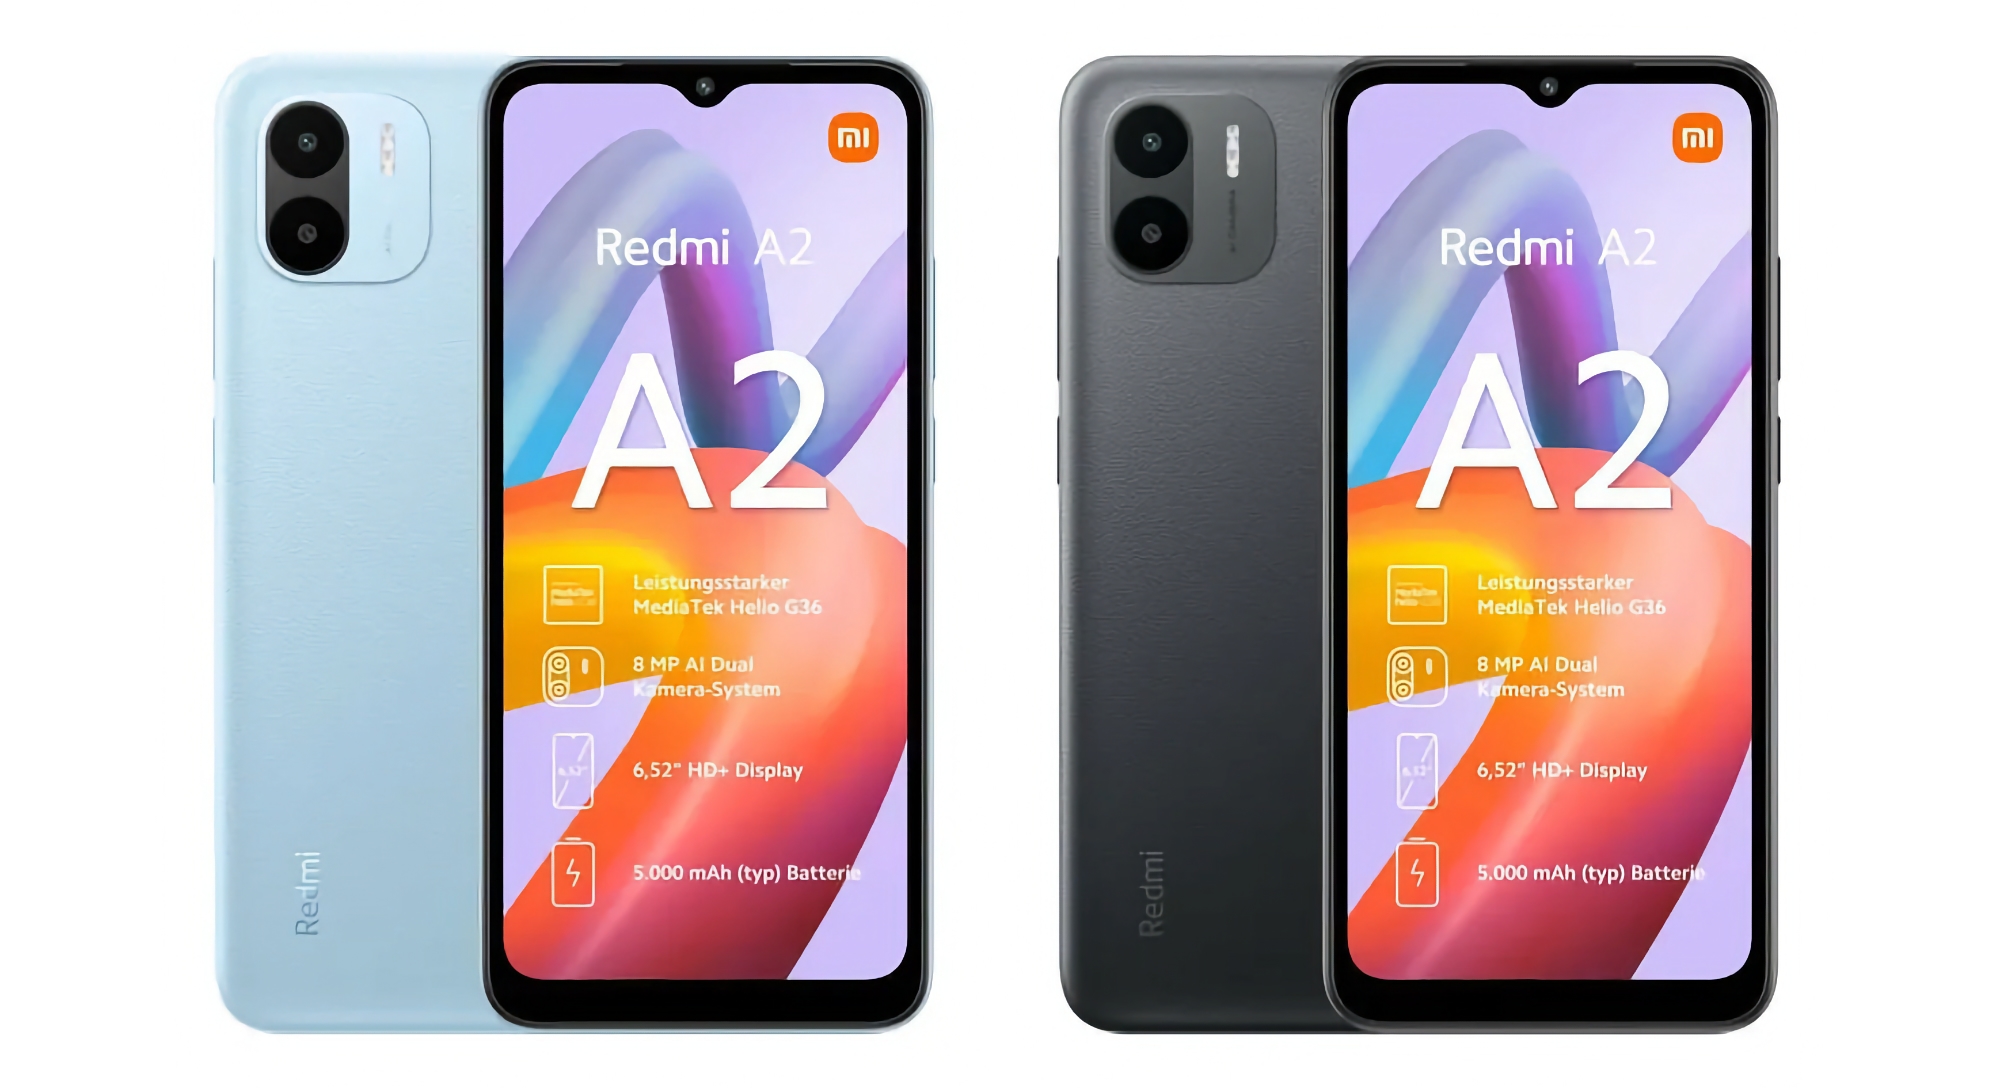 Xiaomi si prepara a lanciare lo smartphone economico Redmi A2 con doppia fotocamera, chip MediaTek Helio G36 e prezzo inferiore a 100 euro